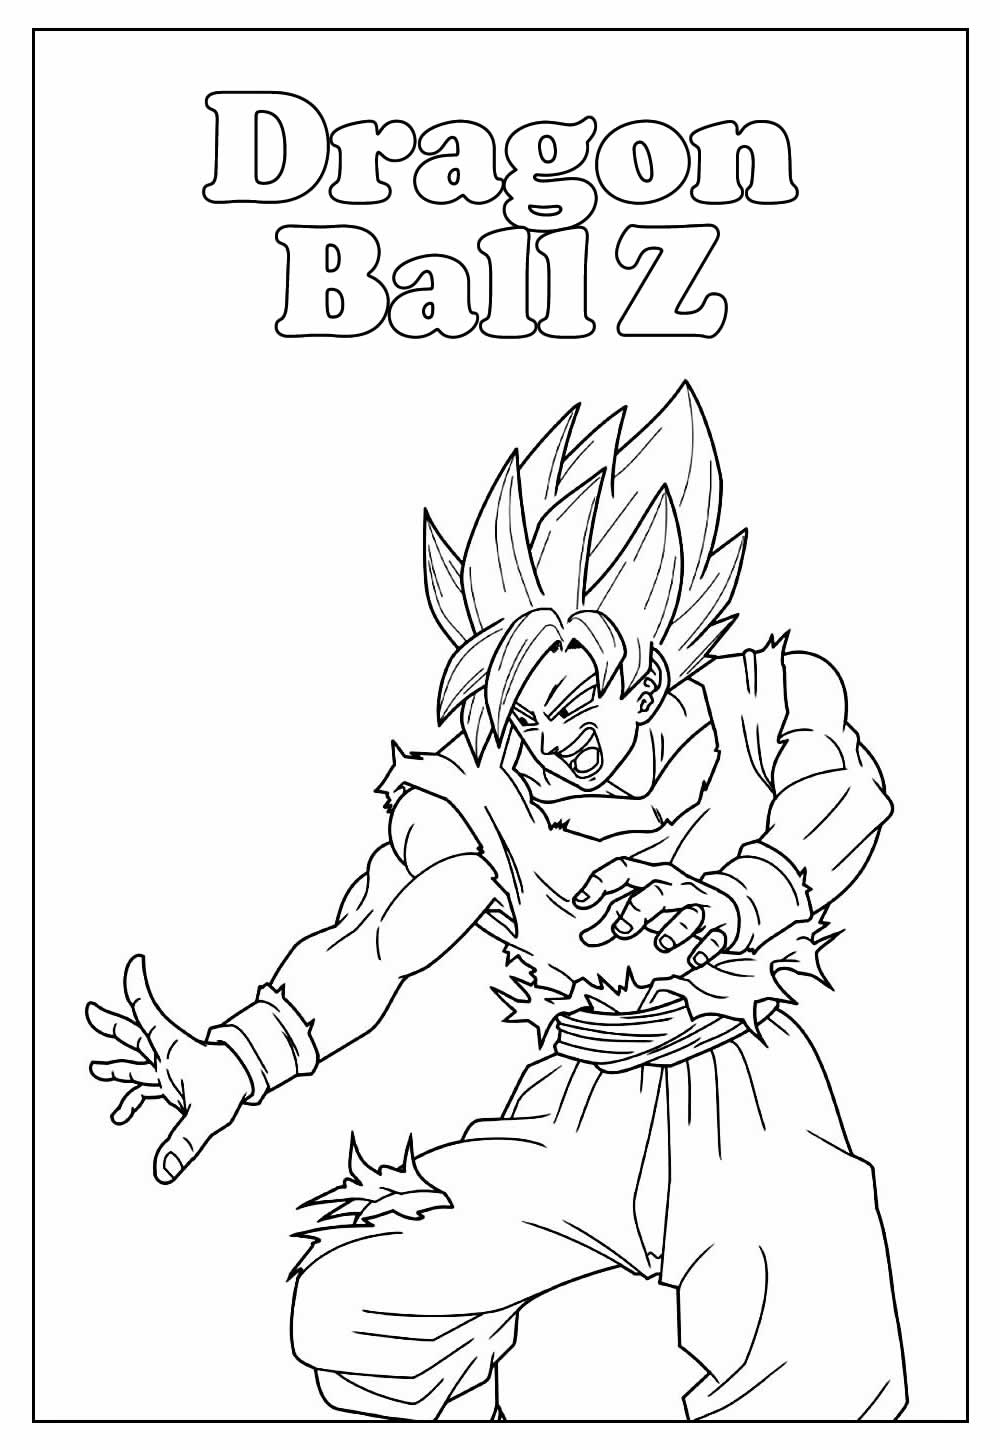 Desenho Educativo de Dragon Ball Z para colorir